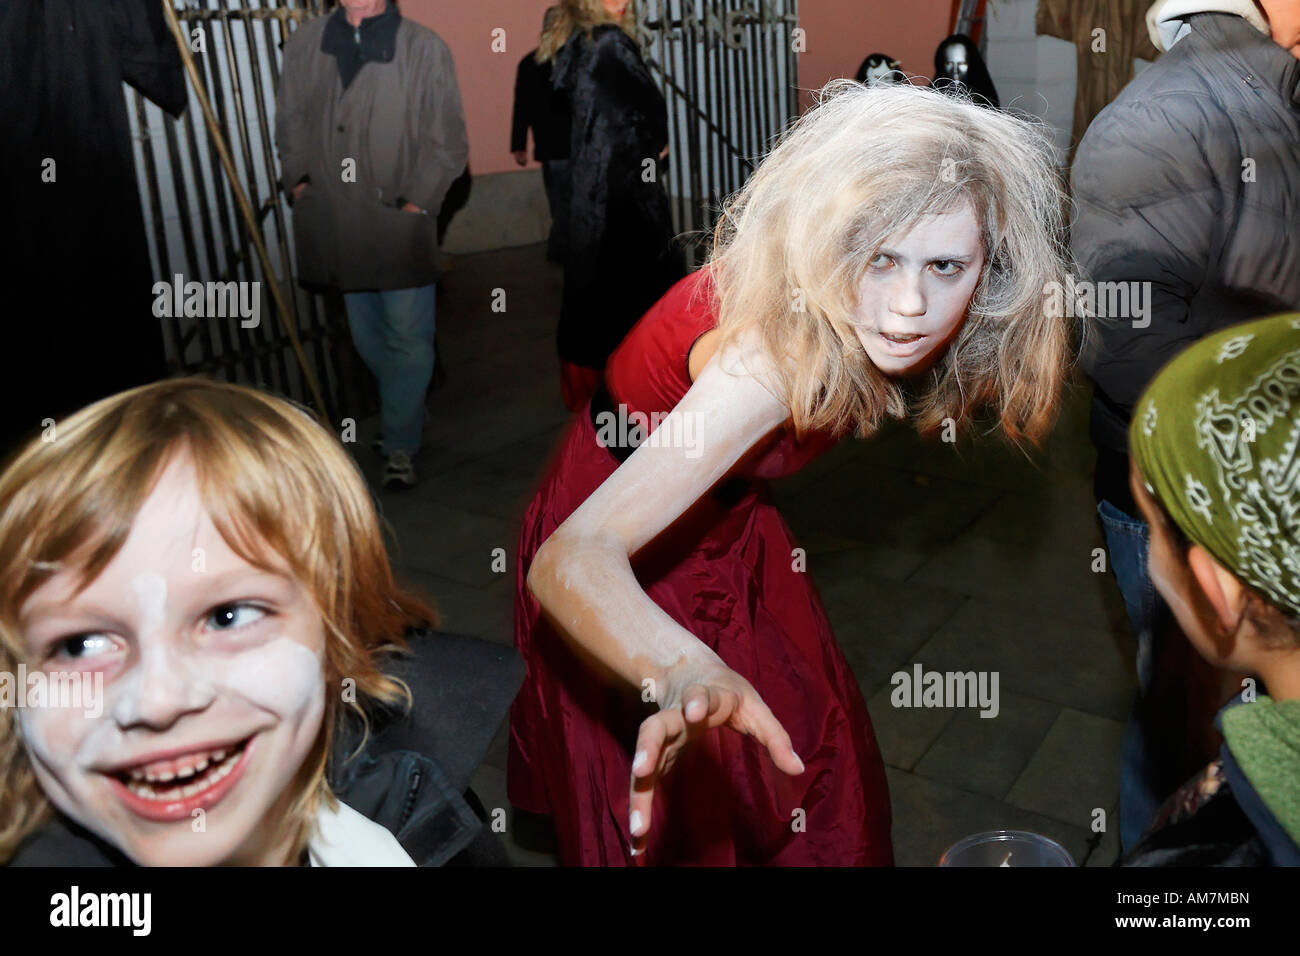 Jeune fille avec maquillage de sorcière atteignant pour un enfant, Halloween événement pour les enfants, théâtre musée Duesseldorf, NRW, Allemagne Banque D'Images